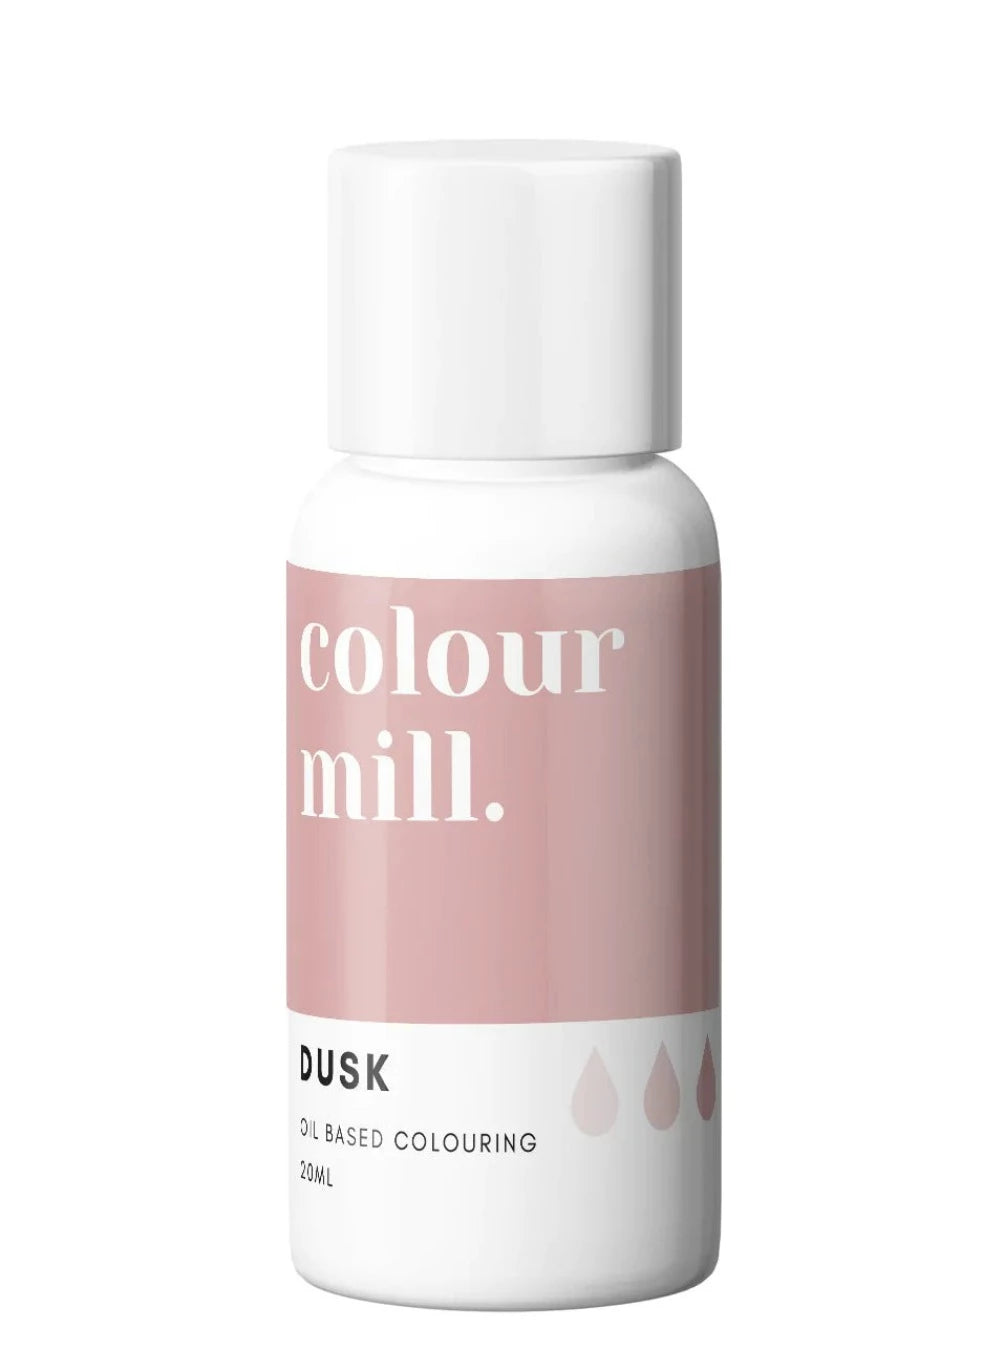 dusk colour mill, Dusk colour mill, colour mill oil based, colour mill , oil based, colour mill 